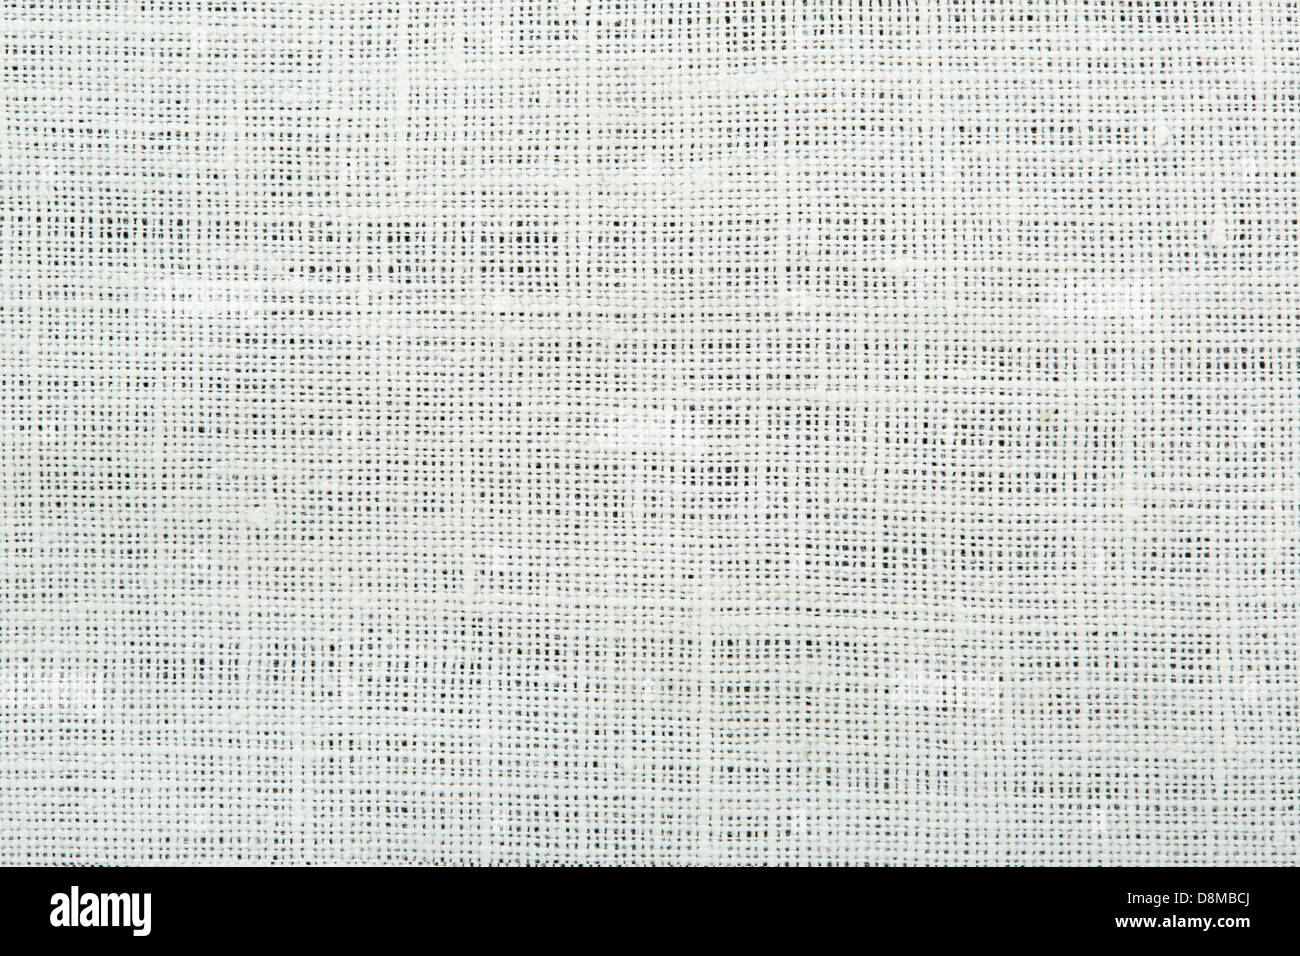 https://c8.alamy.com/compes/d8mbcj/lienzo-de-lino-blanco-textura-del-fondo-d8mbcj.jpg